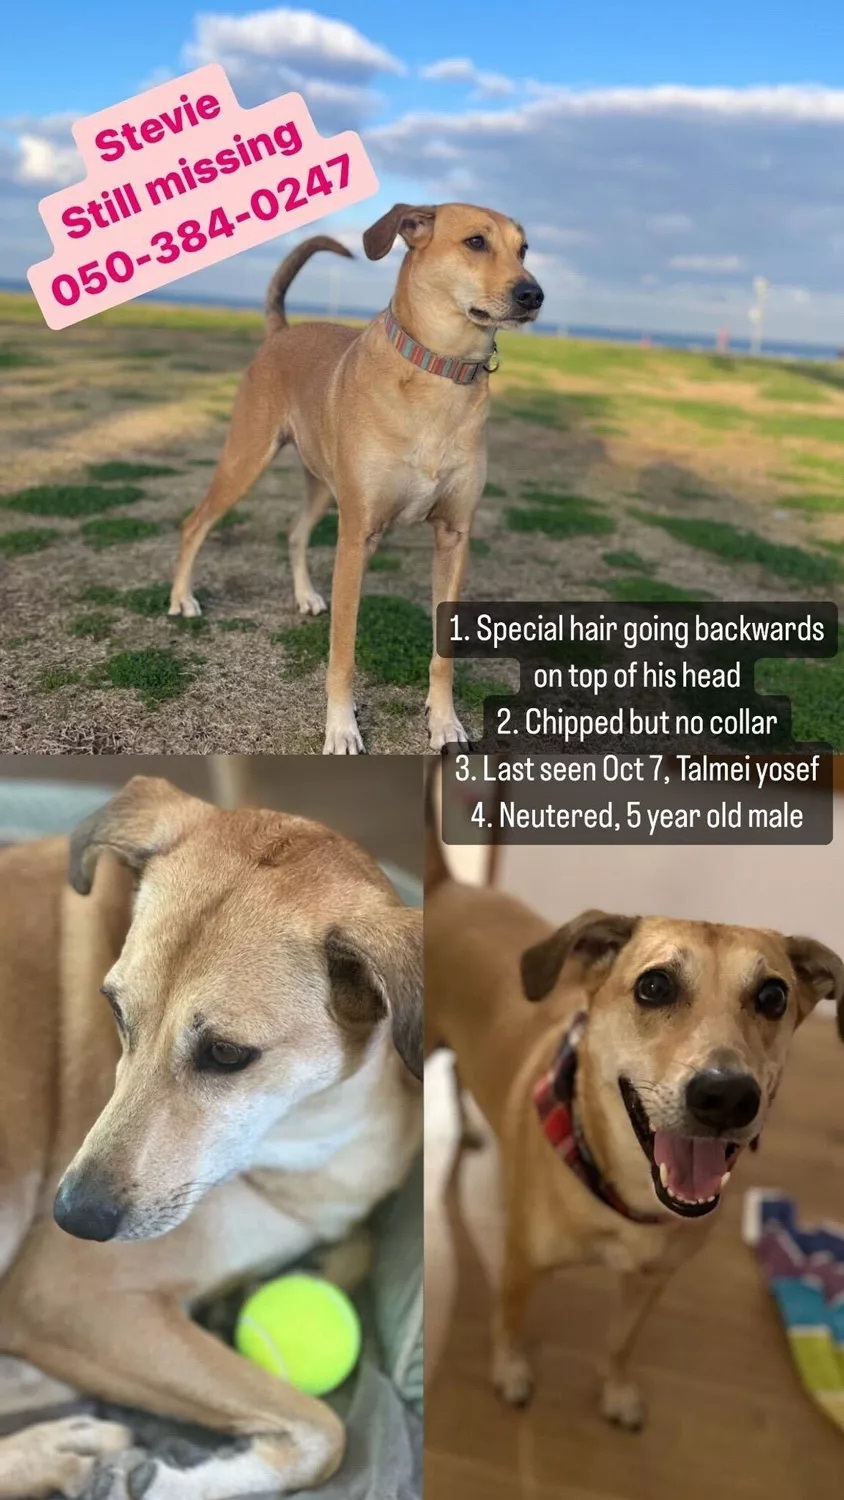 Stevie kutyának egy légiriadó során veszett nyoma Izraelben